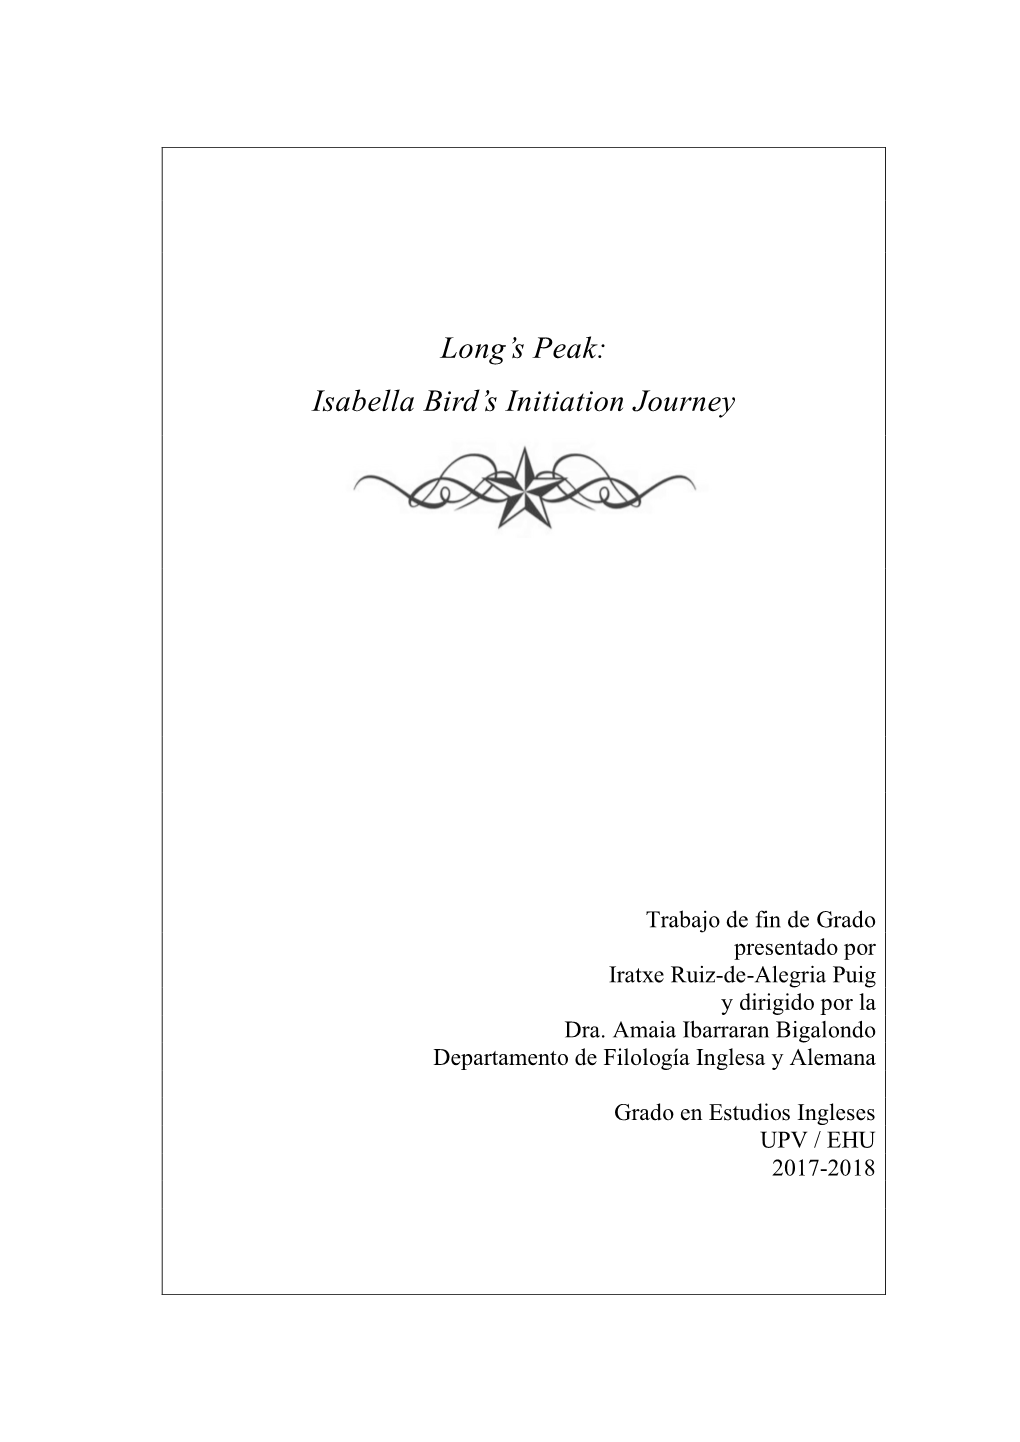 Isabella Bird's Initiation Journey